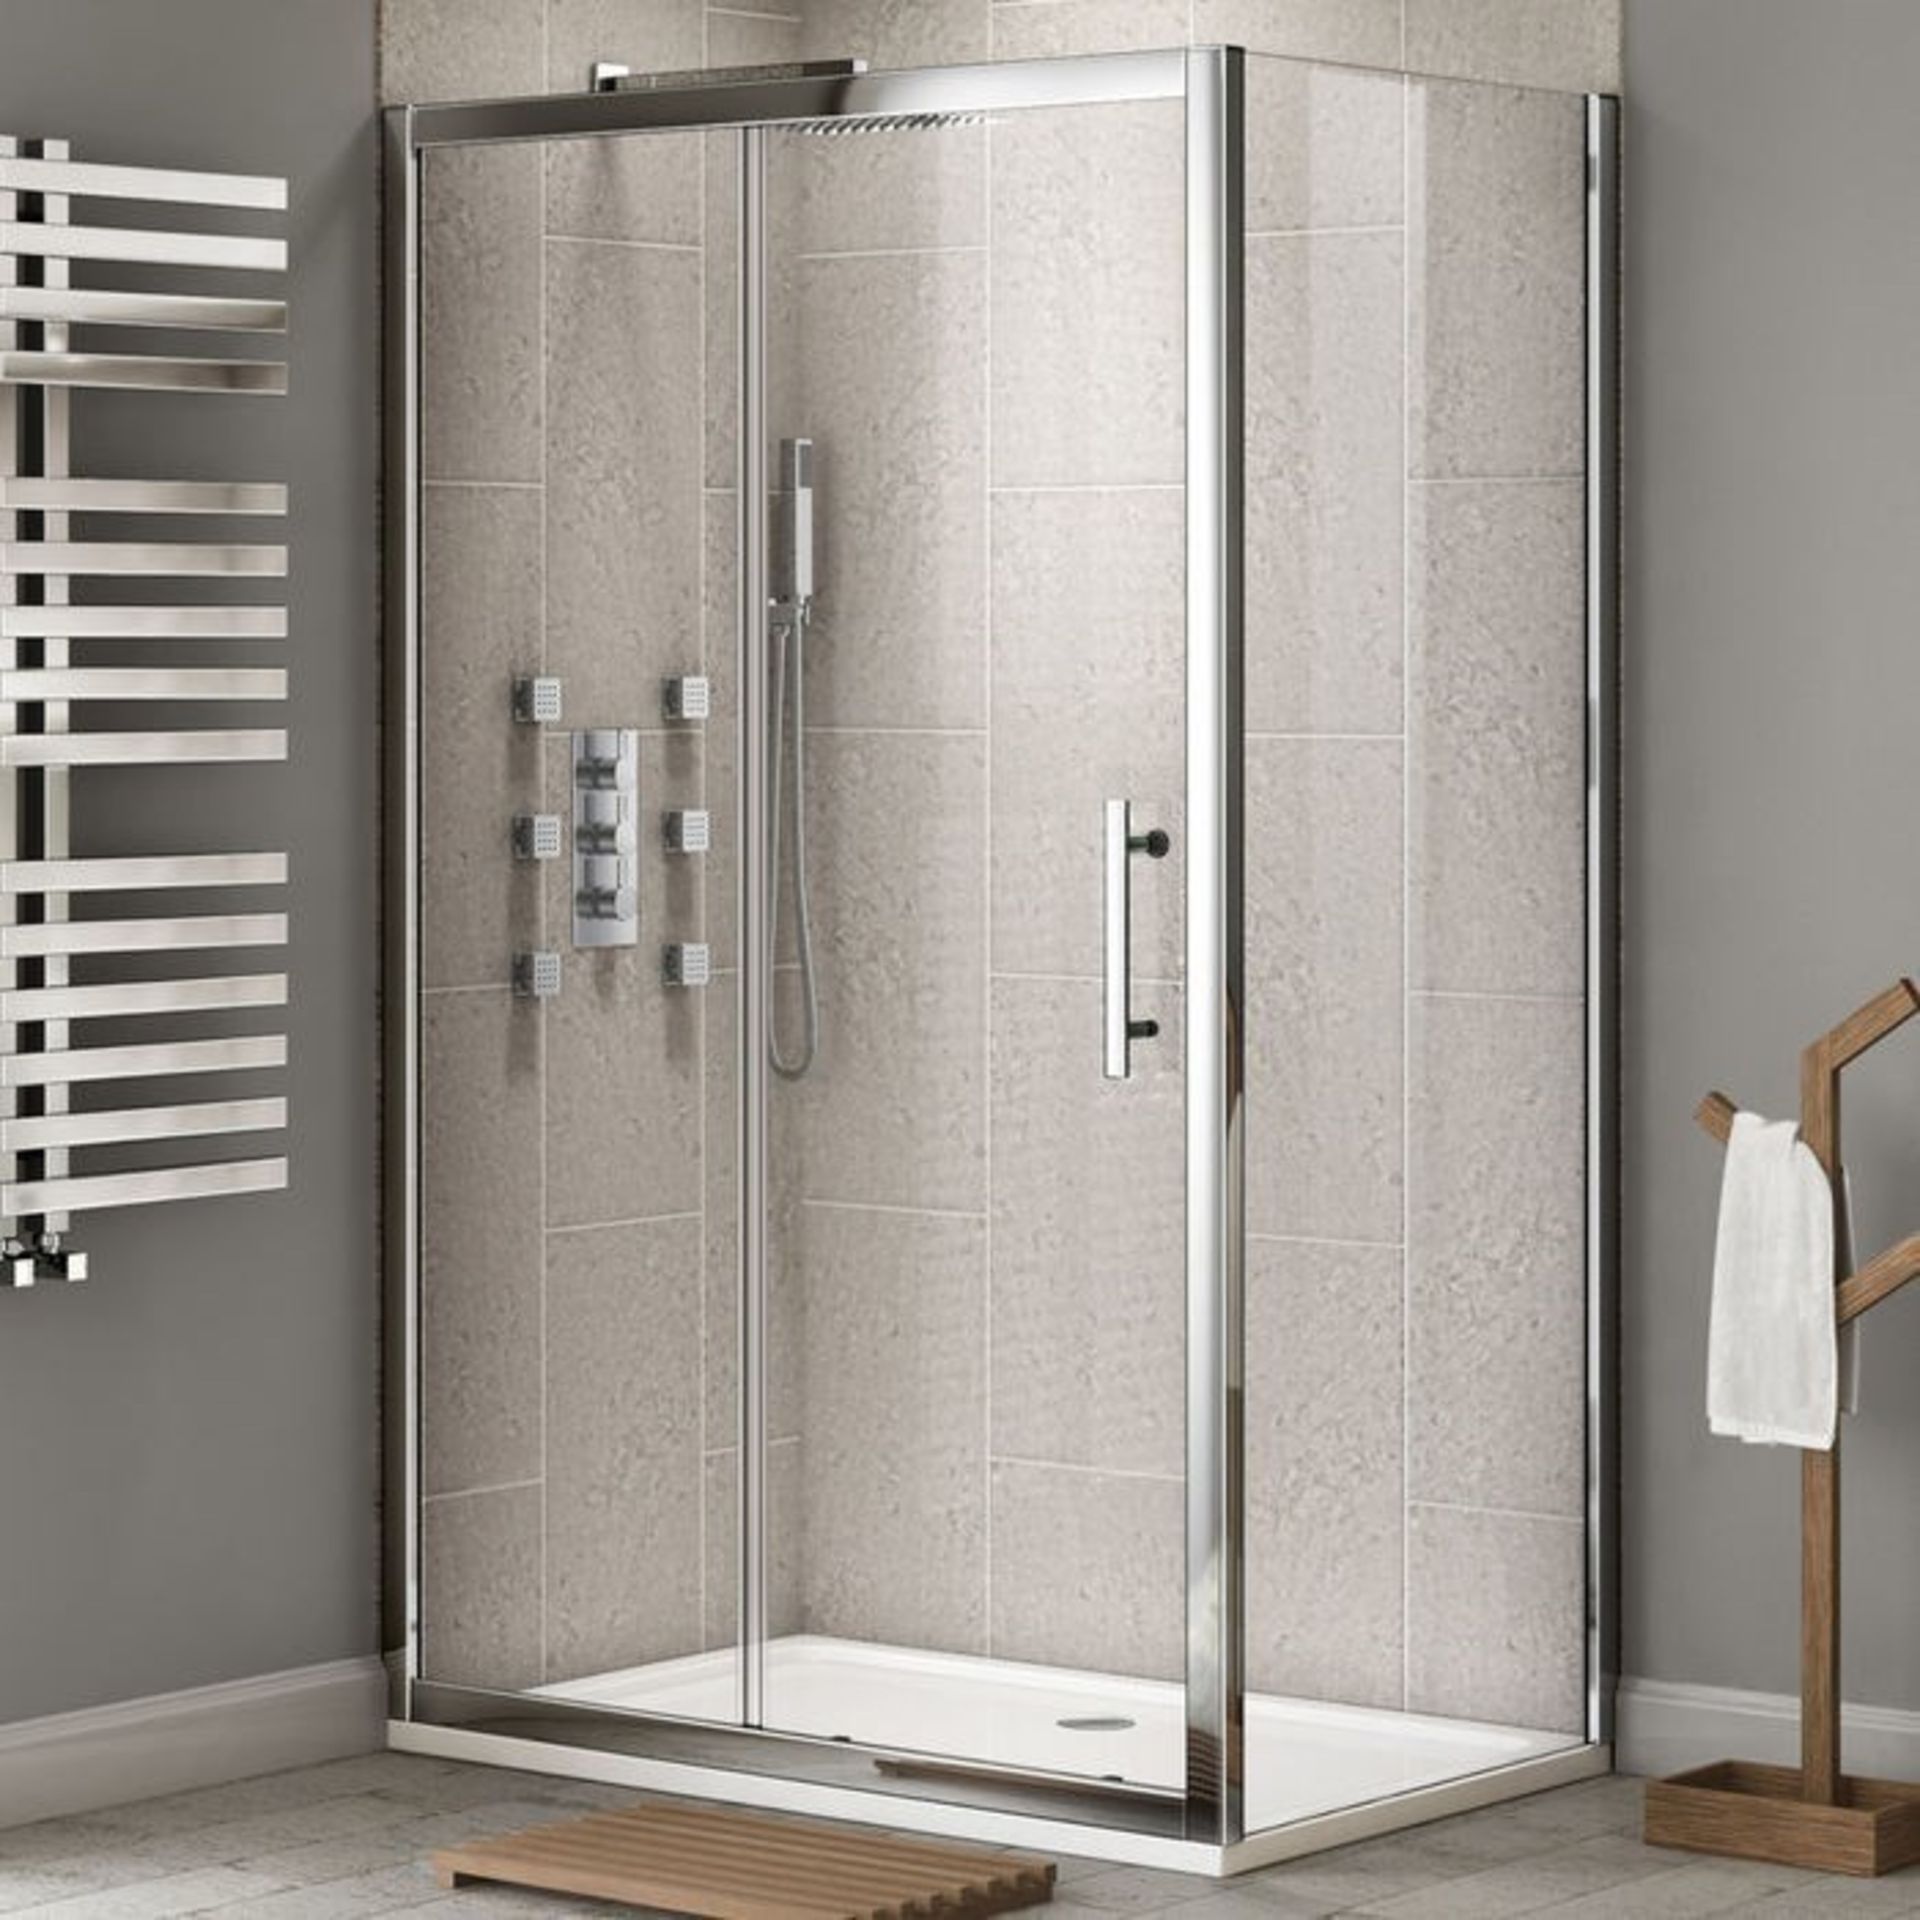 Twyfords 1700x900mm - Premium EasyClean Sliding Door Shower Enclosure. RRP £549.99.8mm EasyCle... - Image 4 of 4